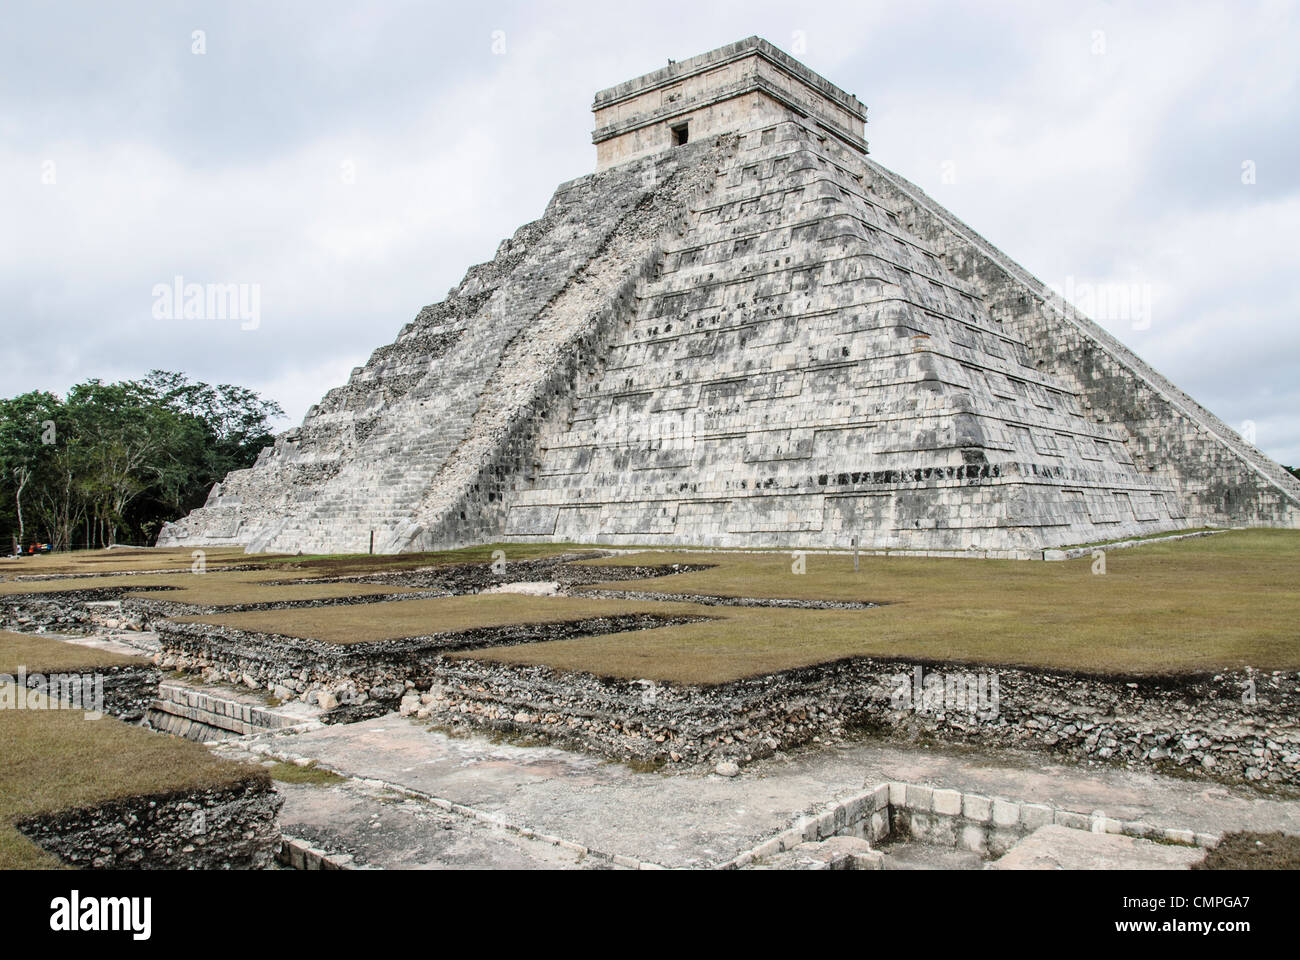 CHICHEN ITZA, Mexique - Temple Pyramide de Kukulkan (El Castillo de) à la Zone archéologique de Chichen Itza, les ruines d'une importante ville de la civilisation Maya au coeur de la péninsule du Yucatan au Mexique. Banque D'Images